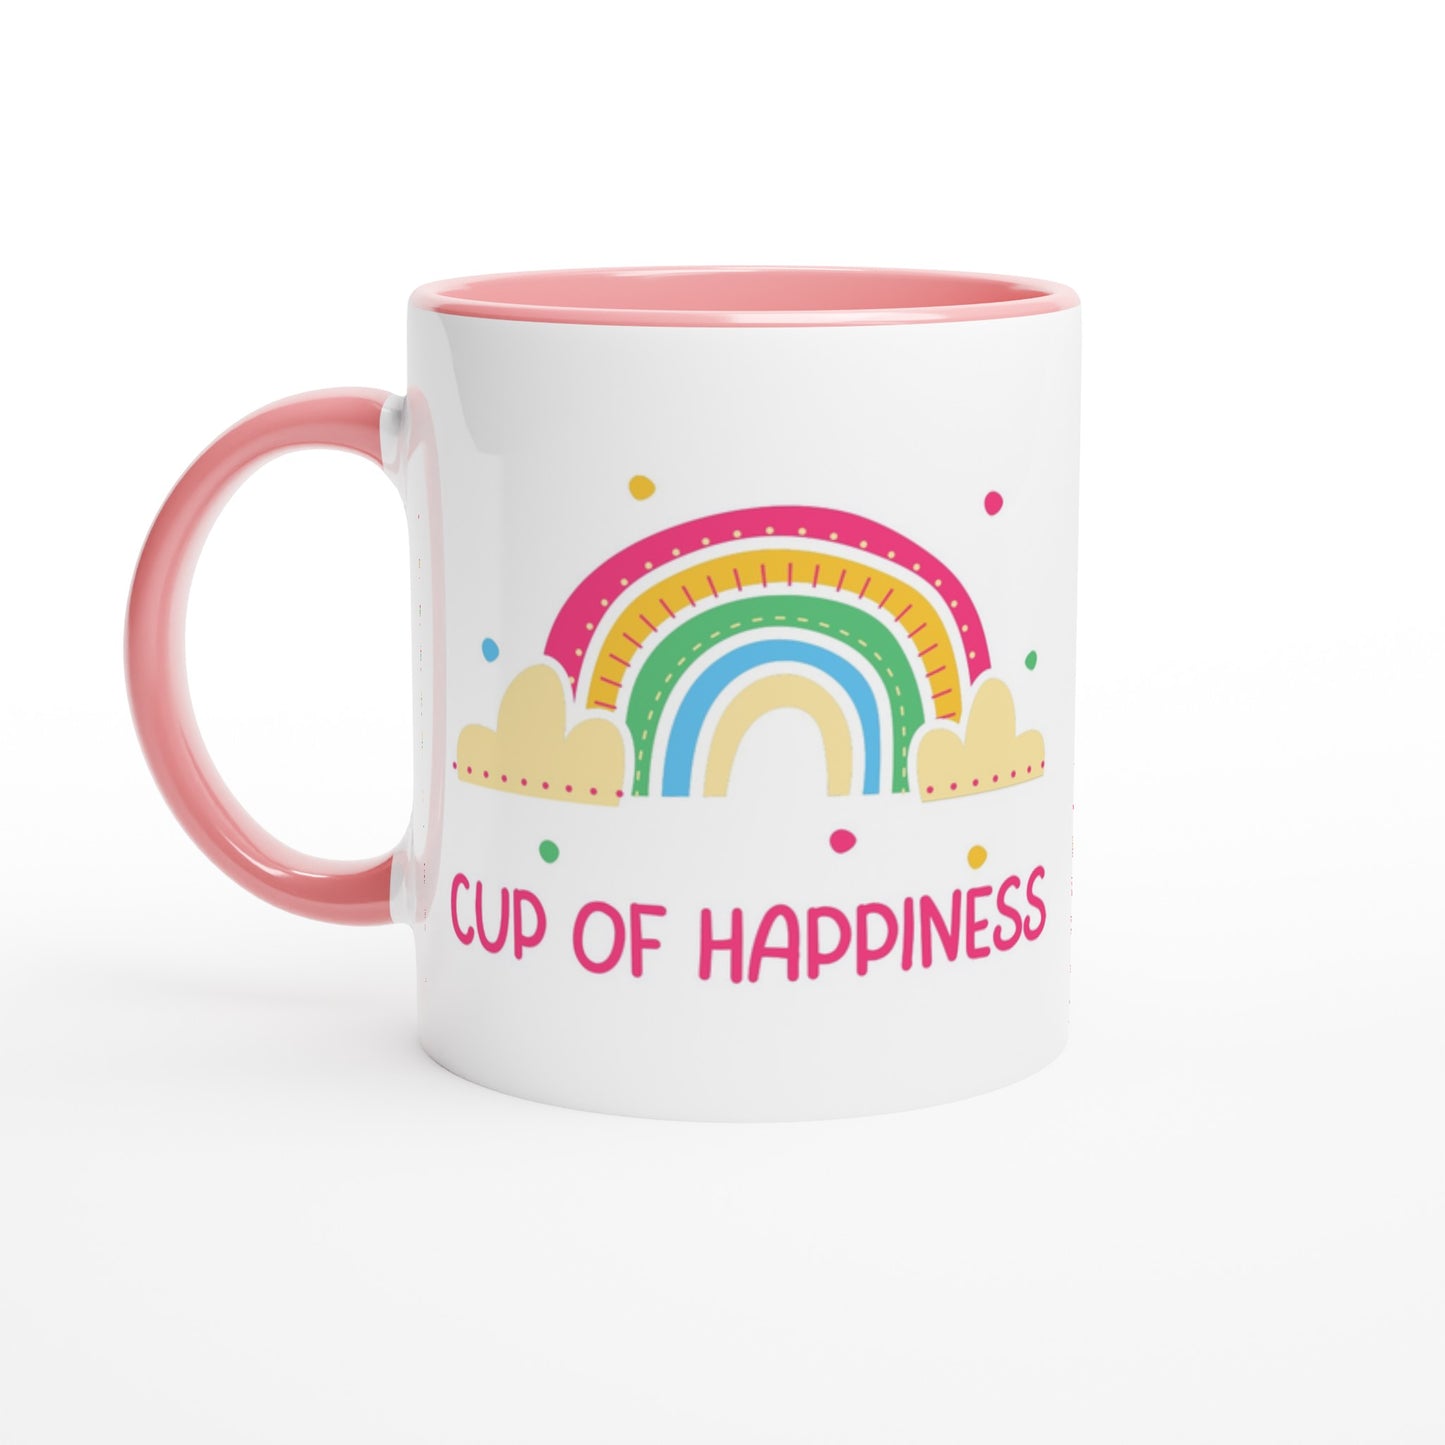 Cup Of Happiness - White 11oz Ceramic Mug with Colour Inside Ceramic Pink Colour 11oz Mug positivity